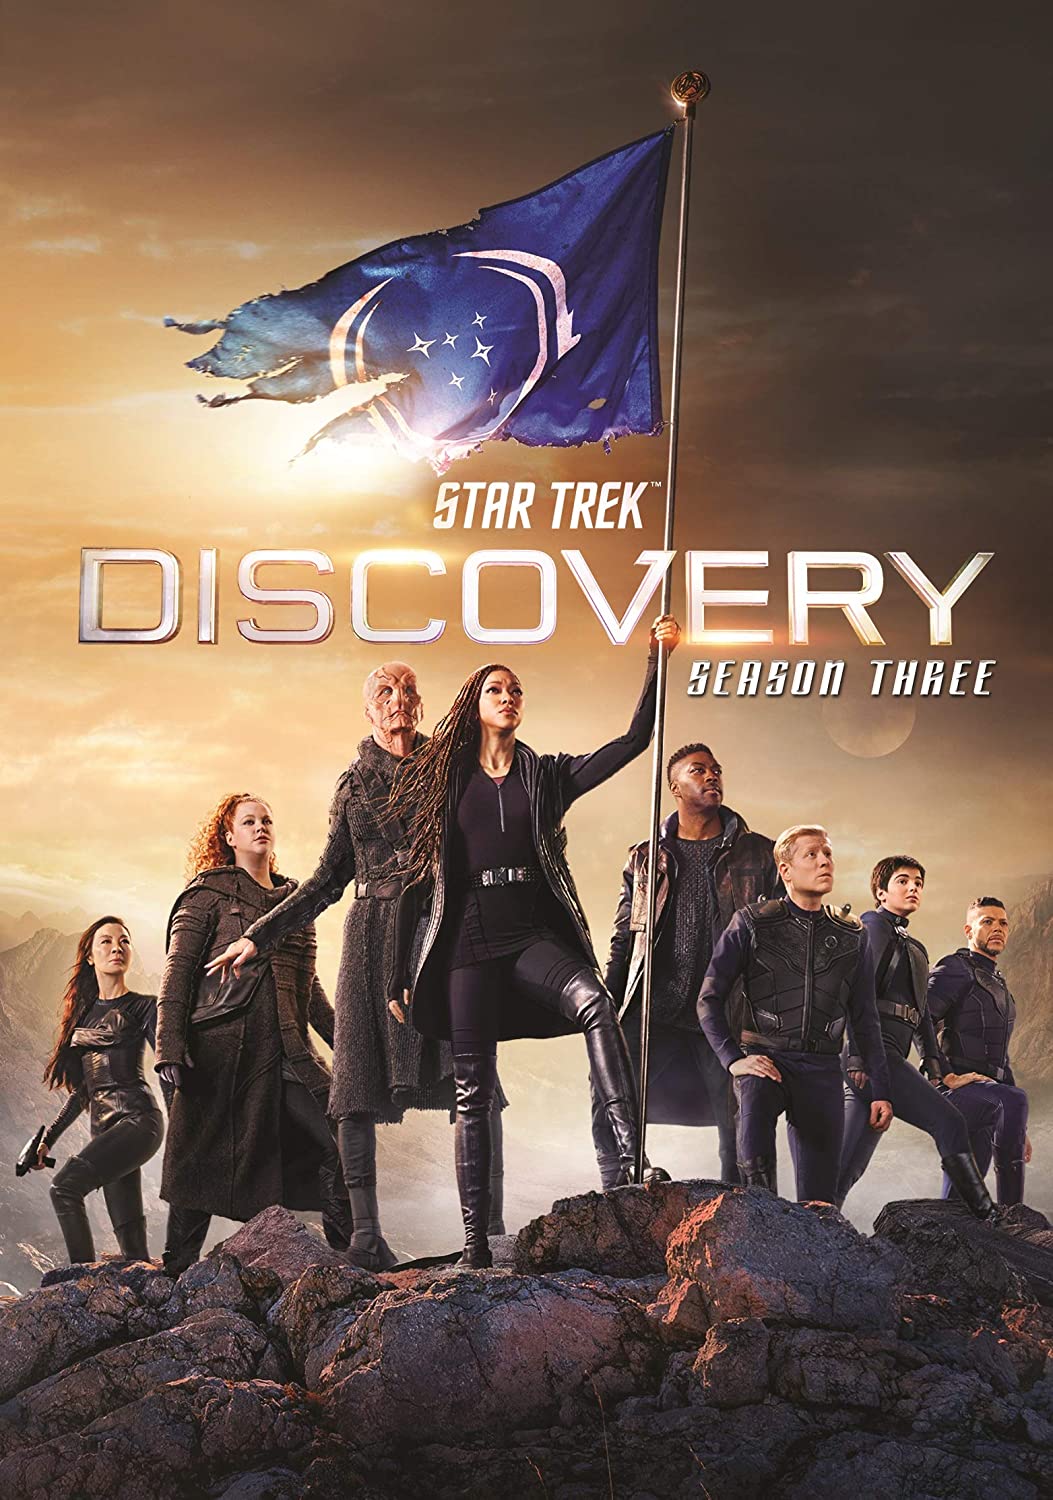 ดูหนังออนไลน์ Star Trek Discovery Season 3 EP9 สตาร์ เทรค ดิสคัฟเวอรี่ ซีซั่นที่ 3 ตอนที่ 9